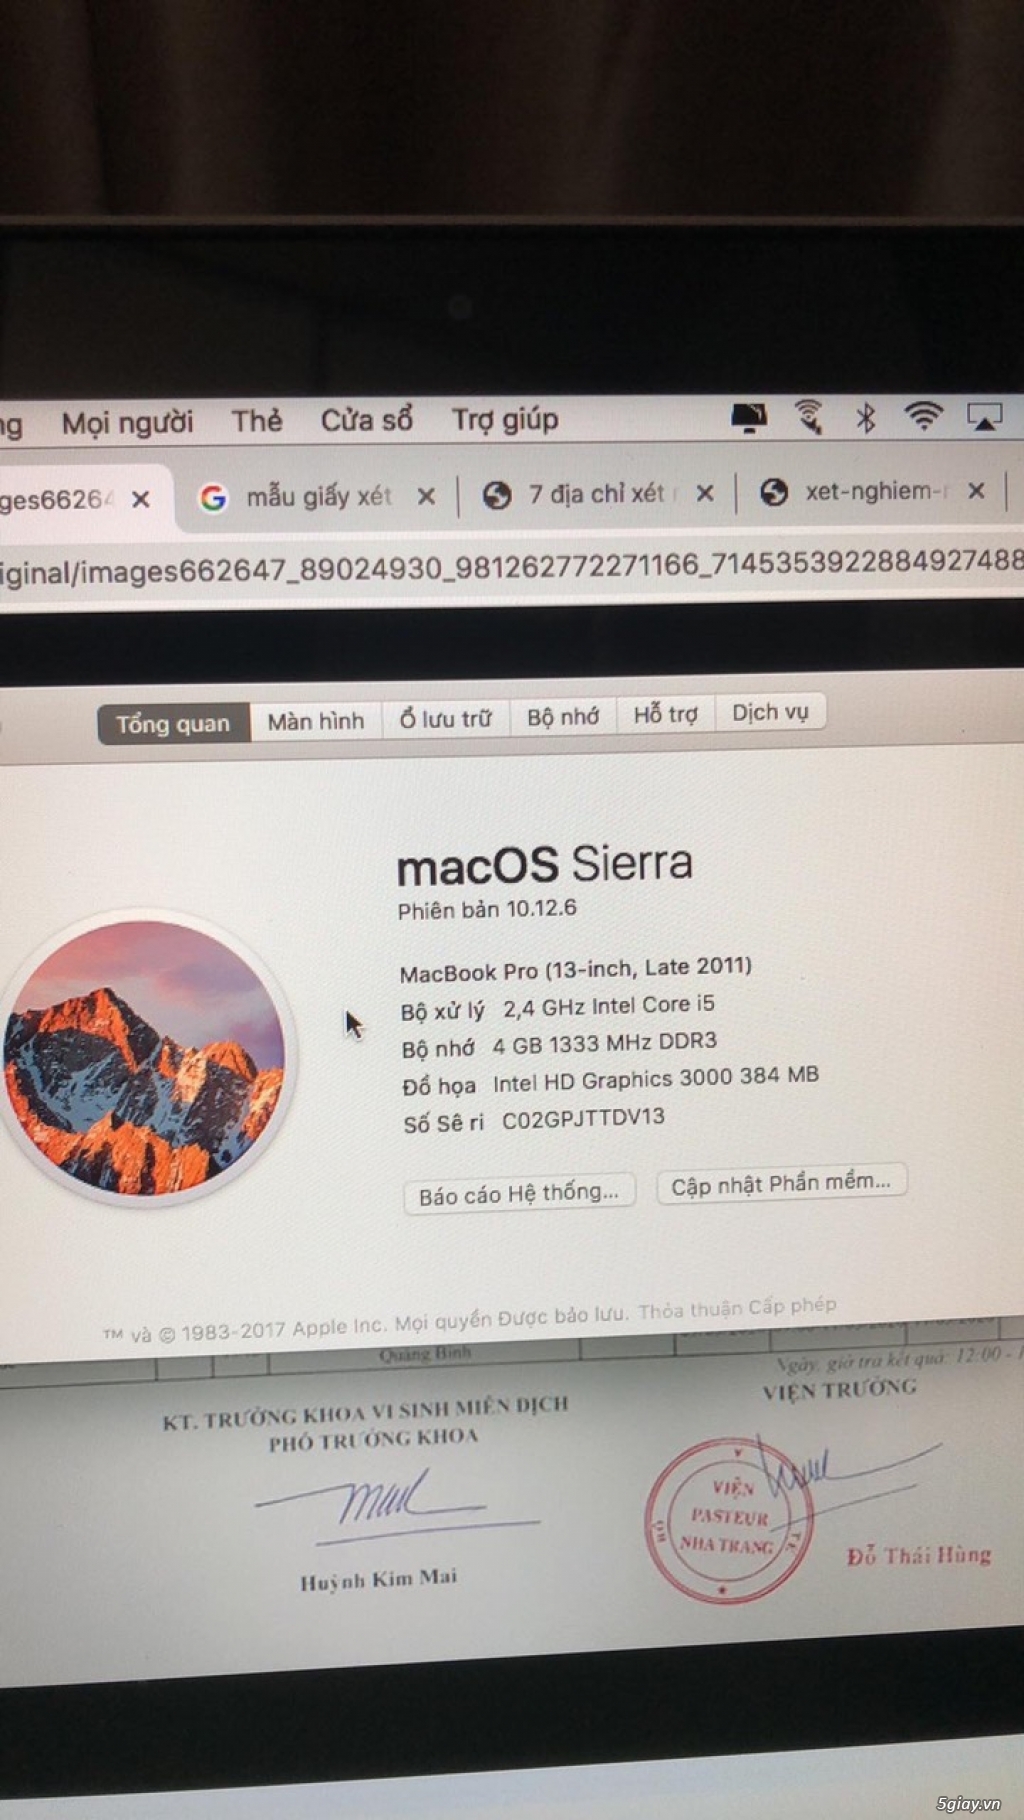 Cần bán Macbook pro 2011 13inch giá 6tr - máy móc zin